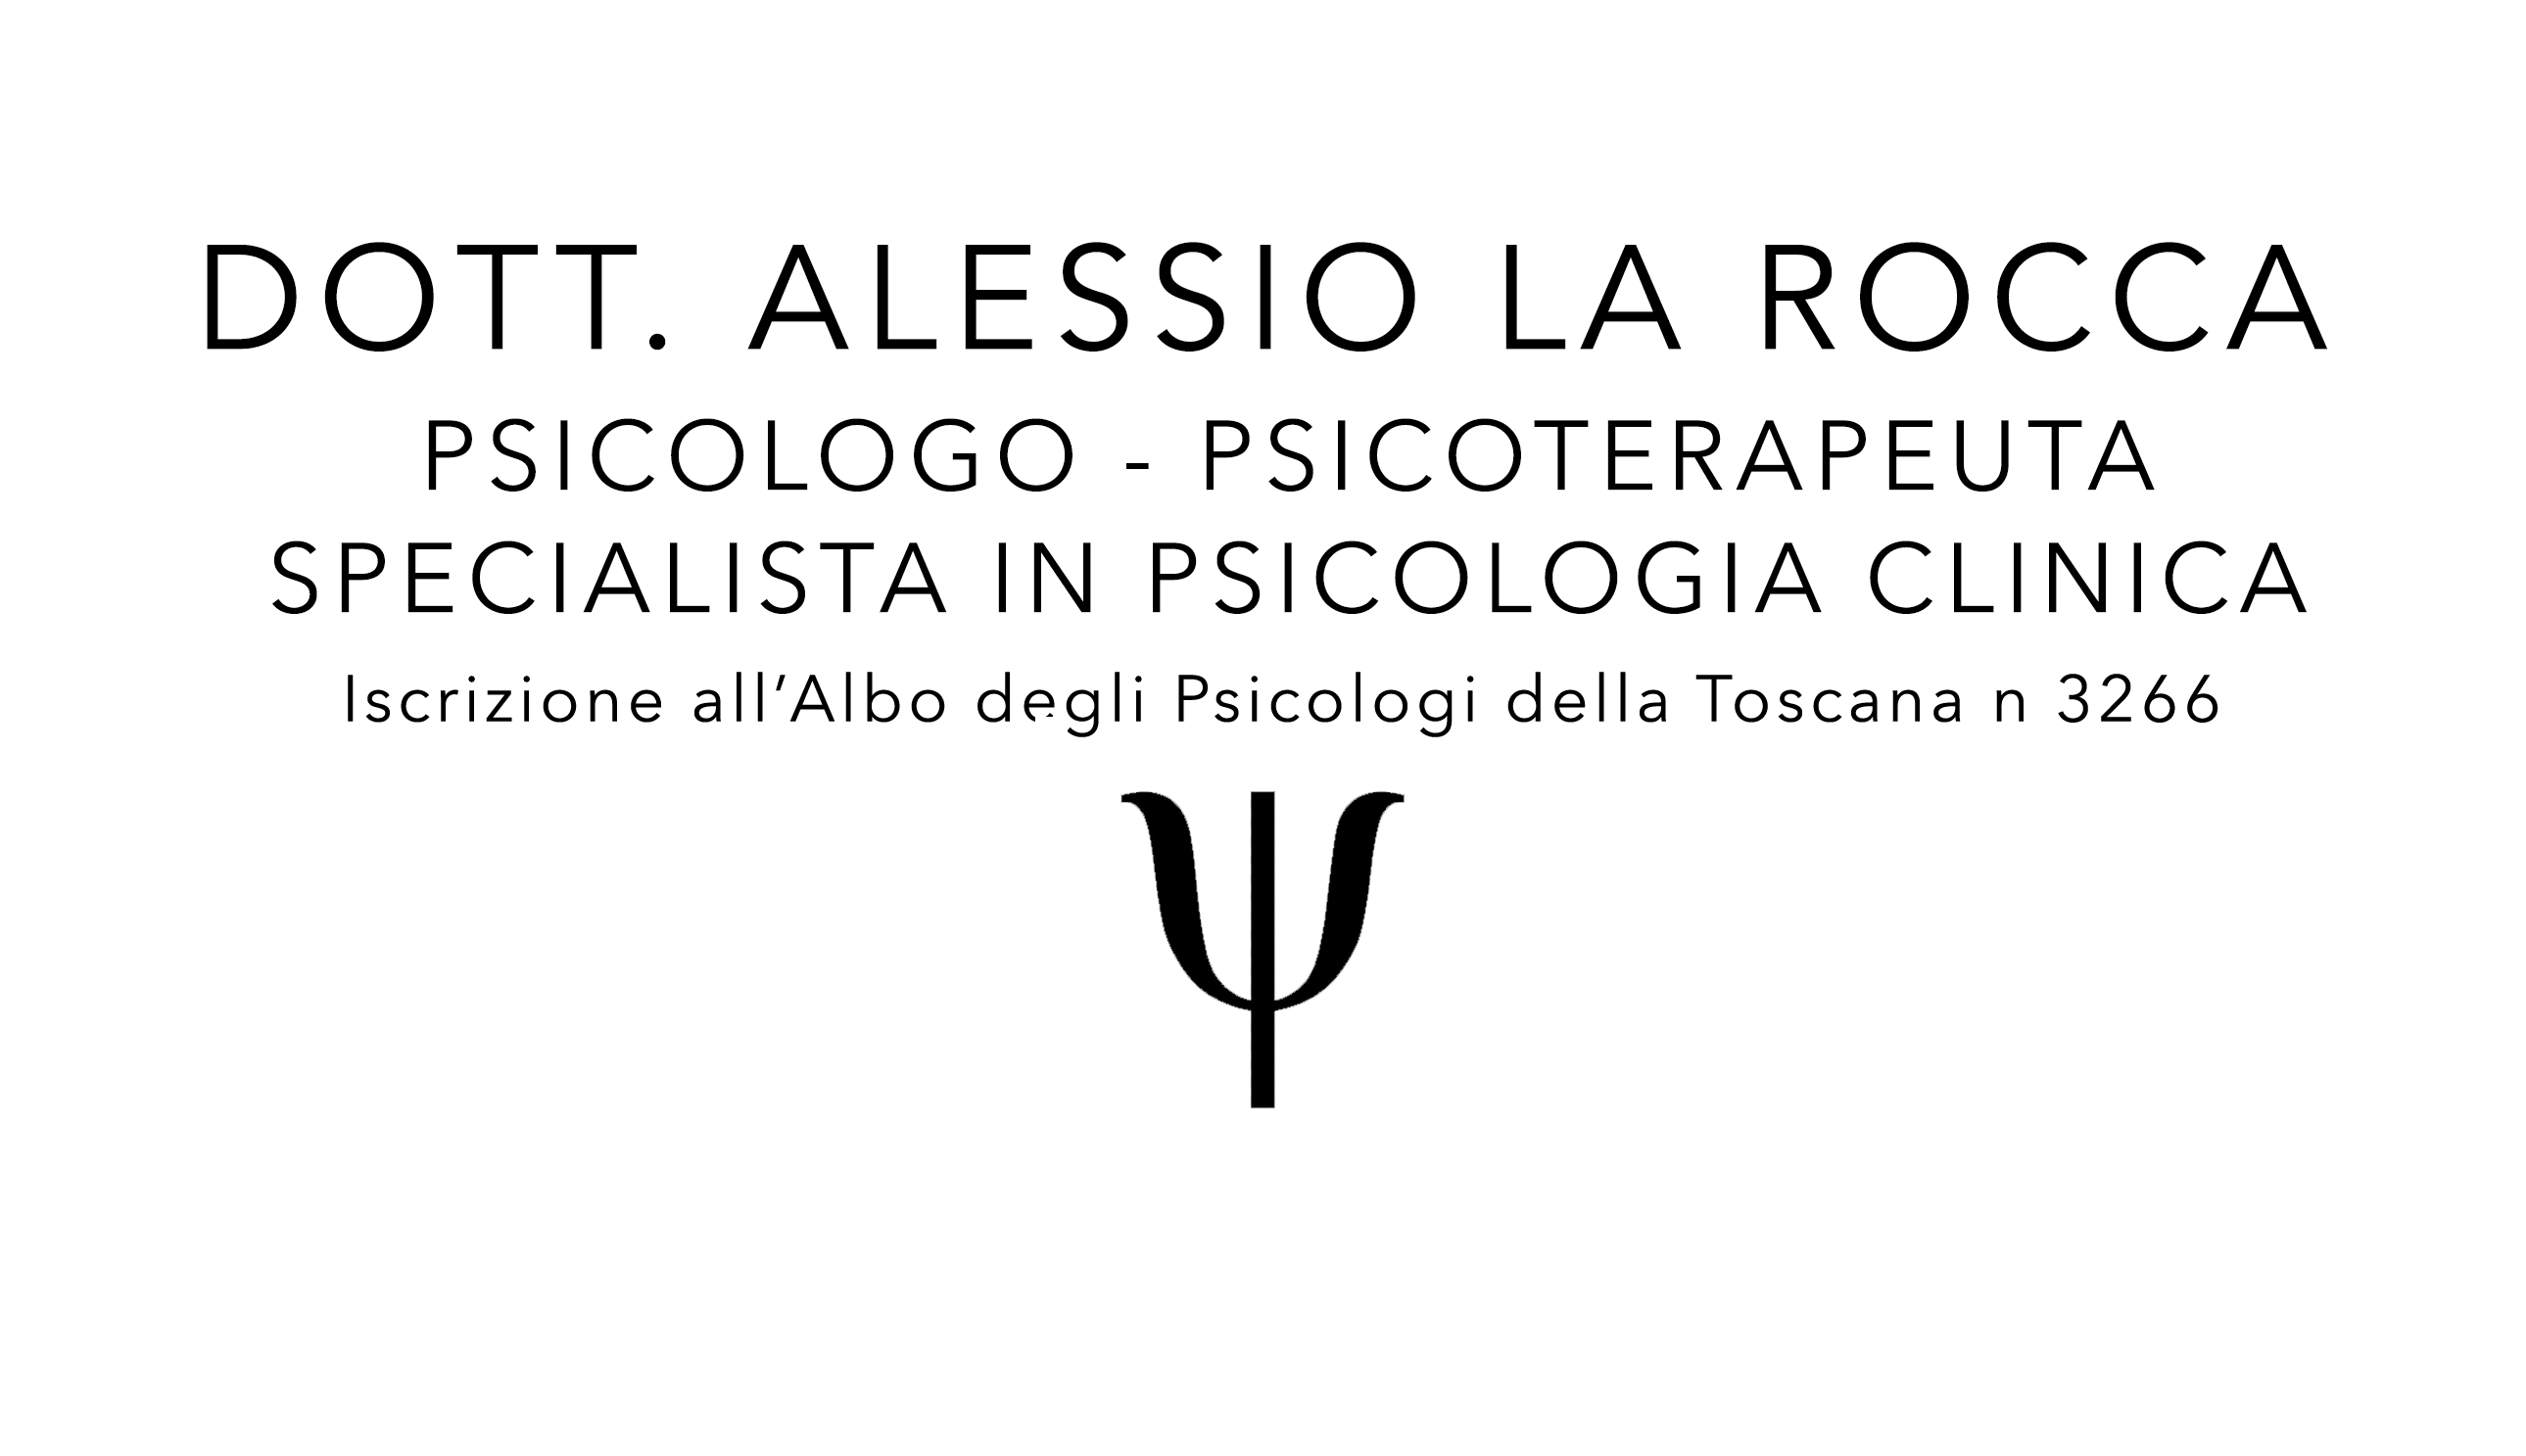 Dott. Alessio La Rocca